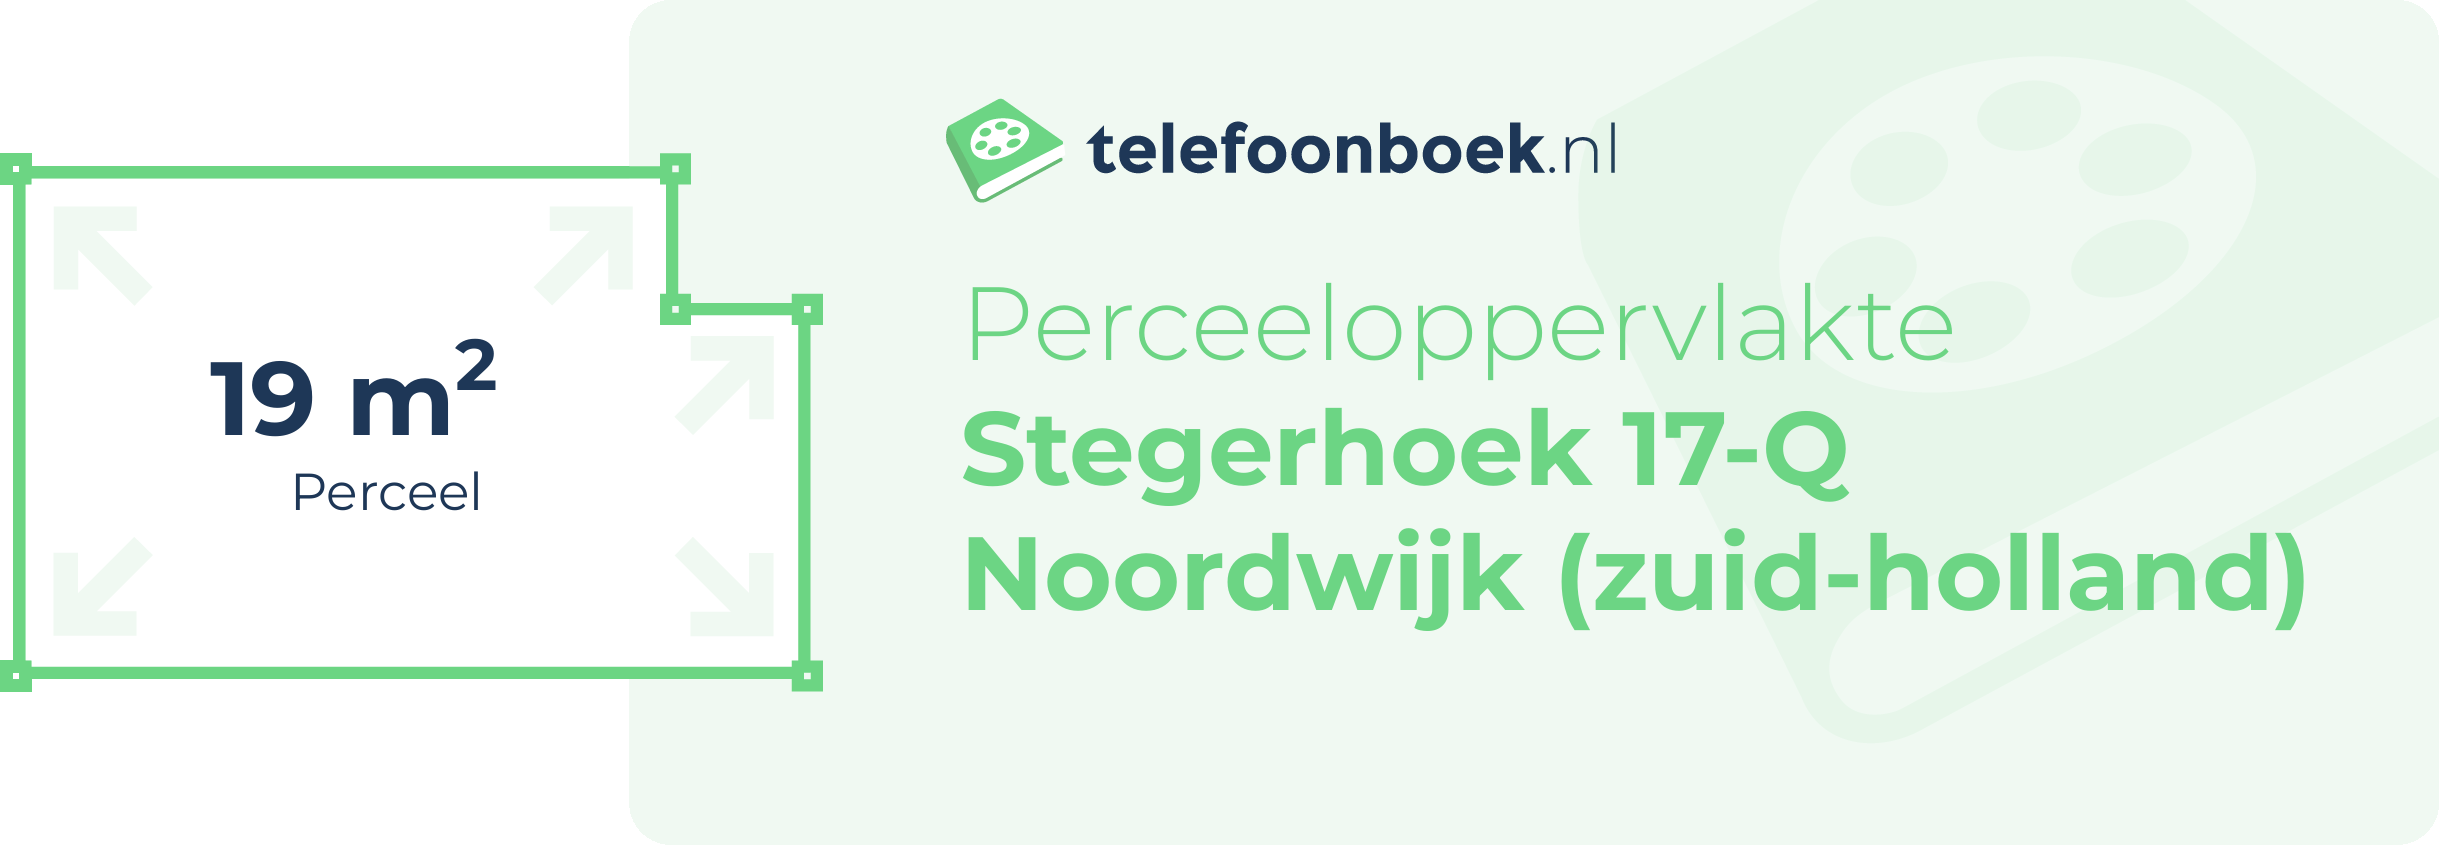 Perceeloppervlakte Stegerhoek 17-Q Noordwijk (Zuid-Holland)